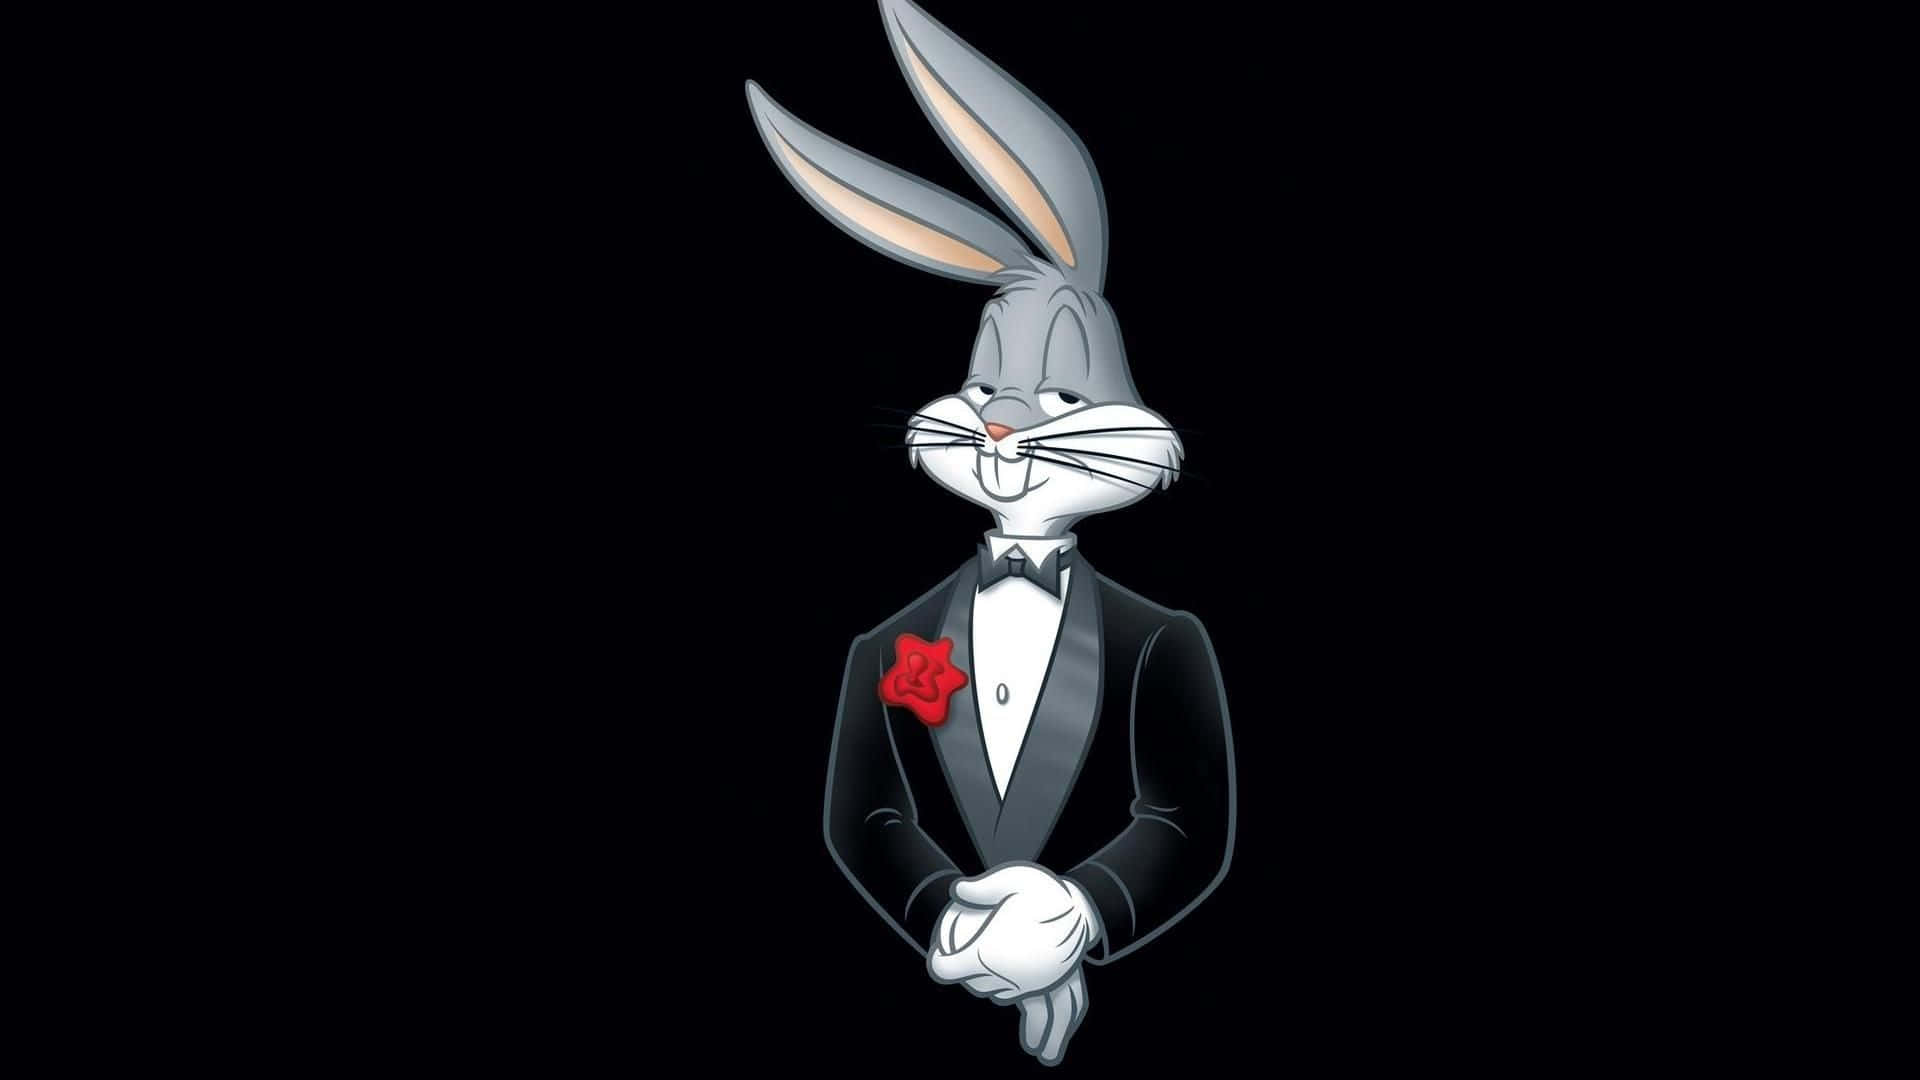 Einklassischer Bugs Bunny, Um Deinen Tag Aufzuhellen! Wallpaper